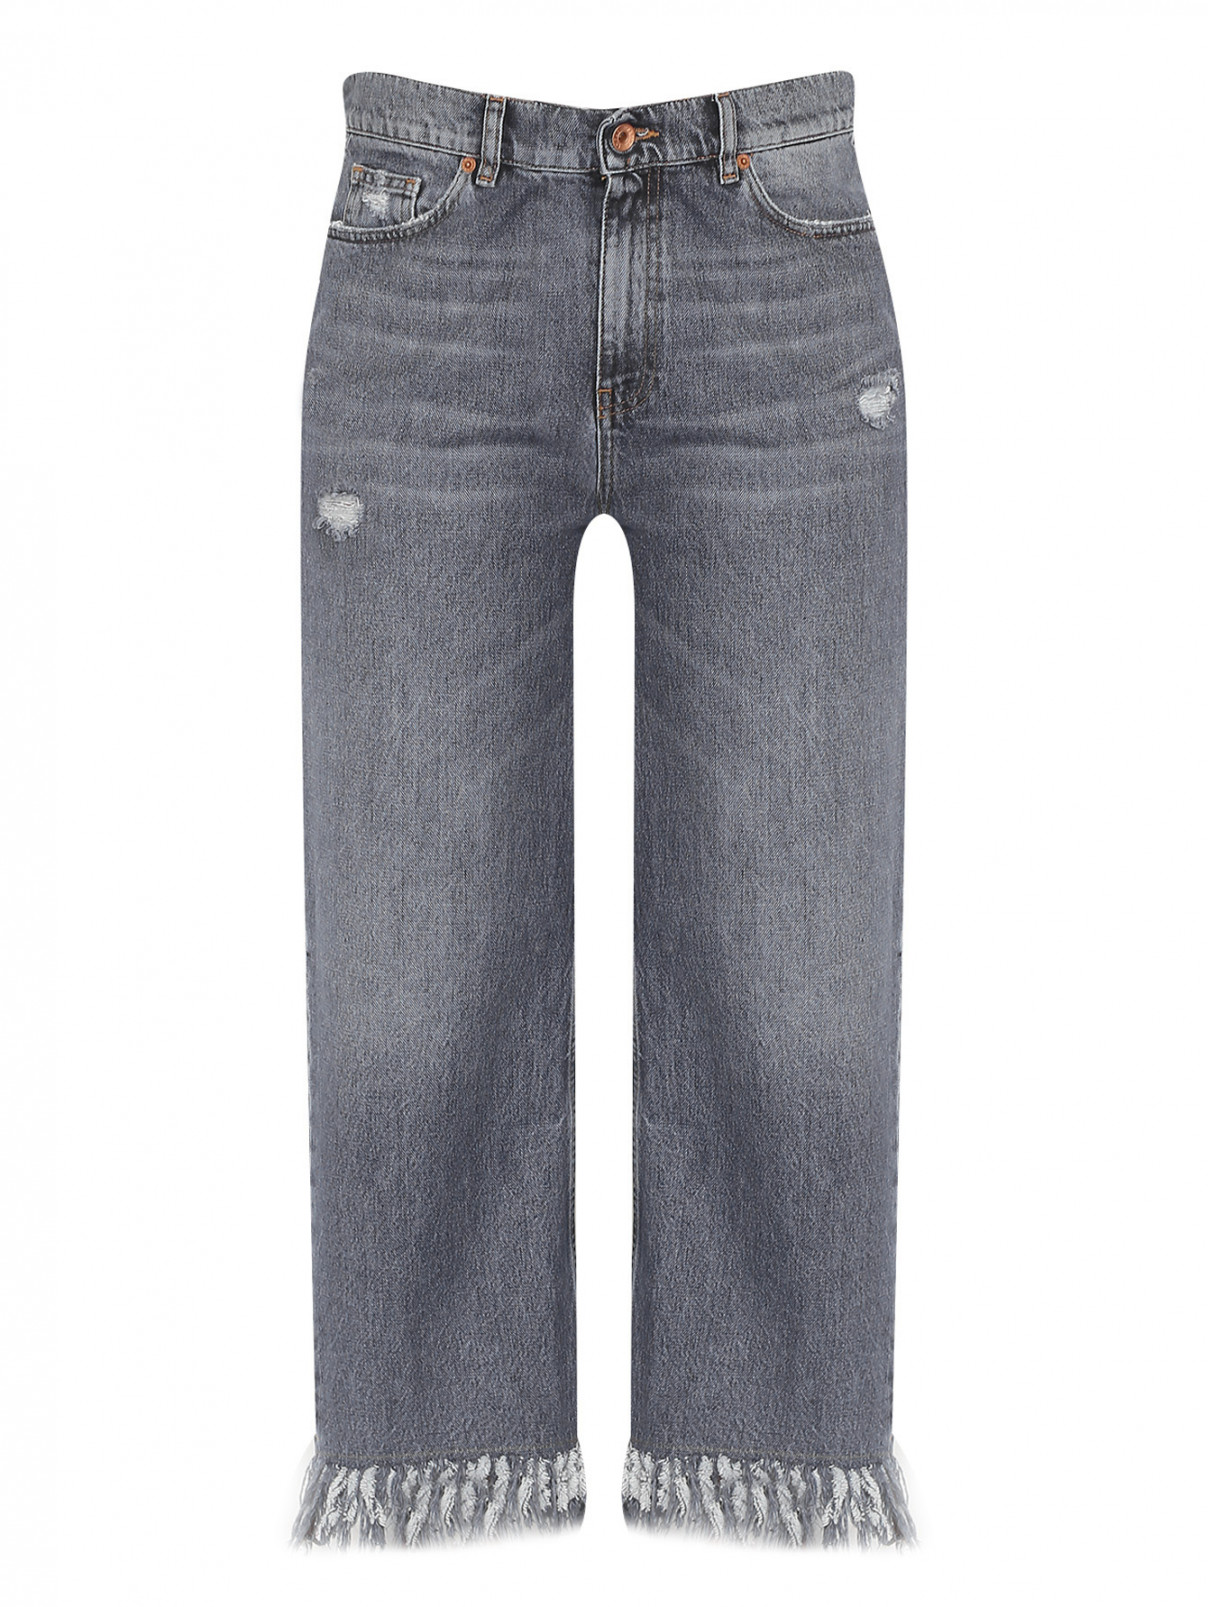 Укороченные джинсы с бахромой Marina Rinaldi  –  Общий вид  – Цвет:  Серый